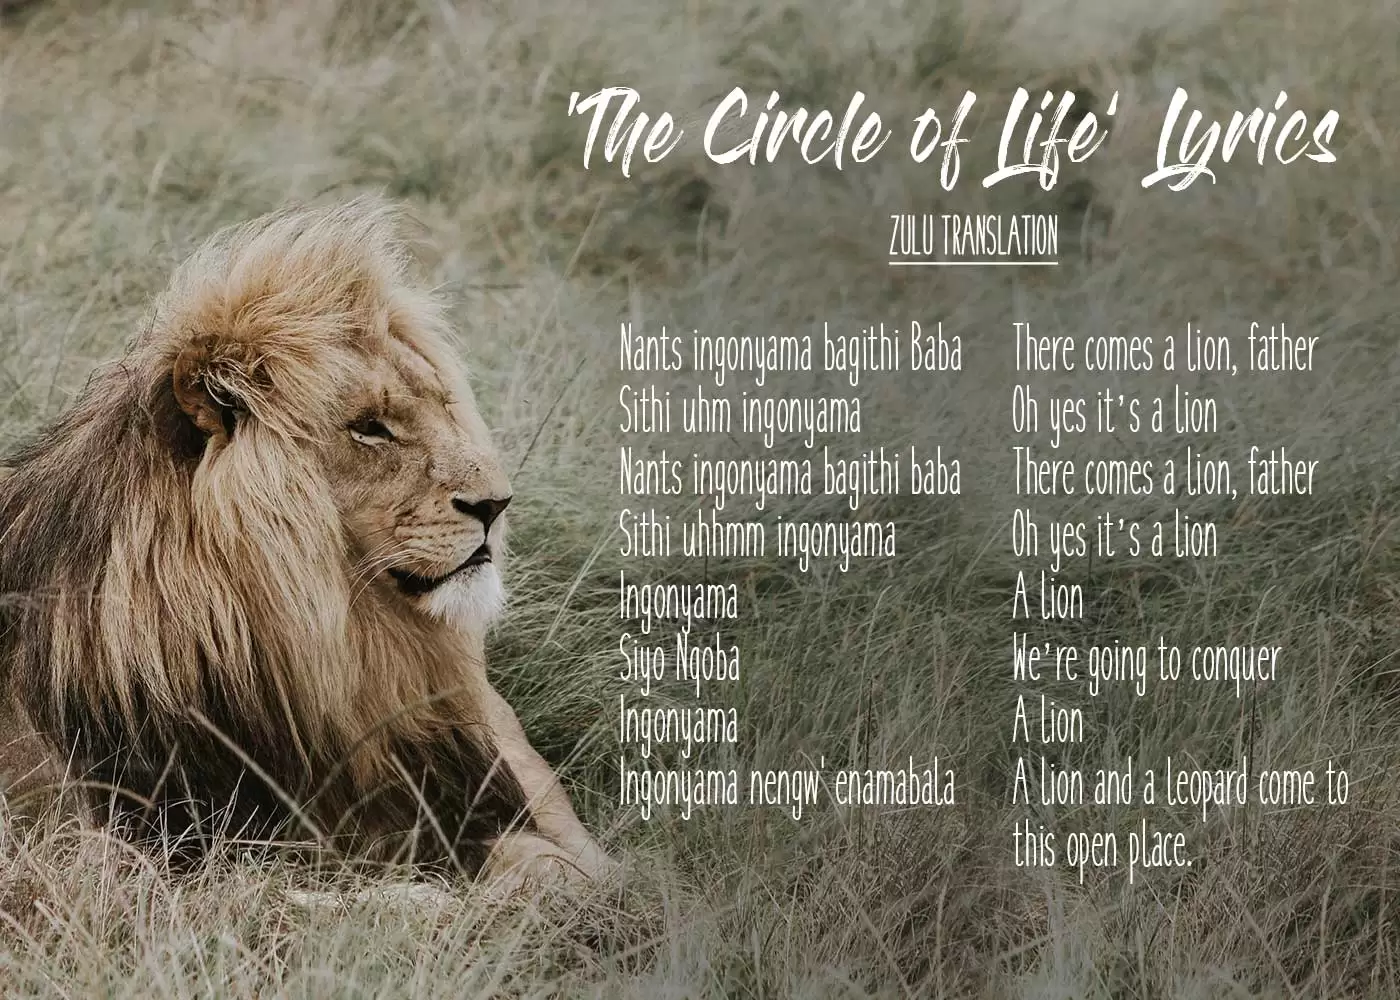 The Lion King - Circle of Life lyrics translated